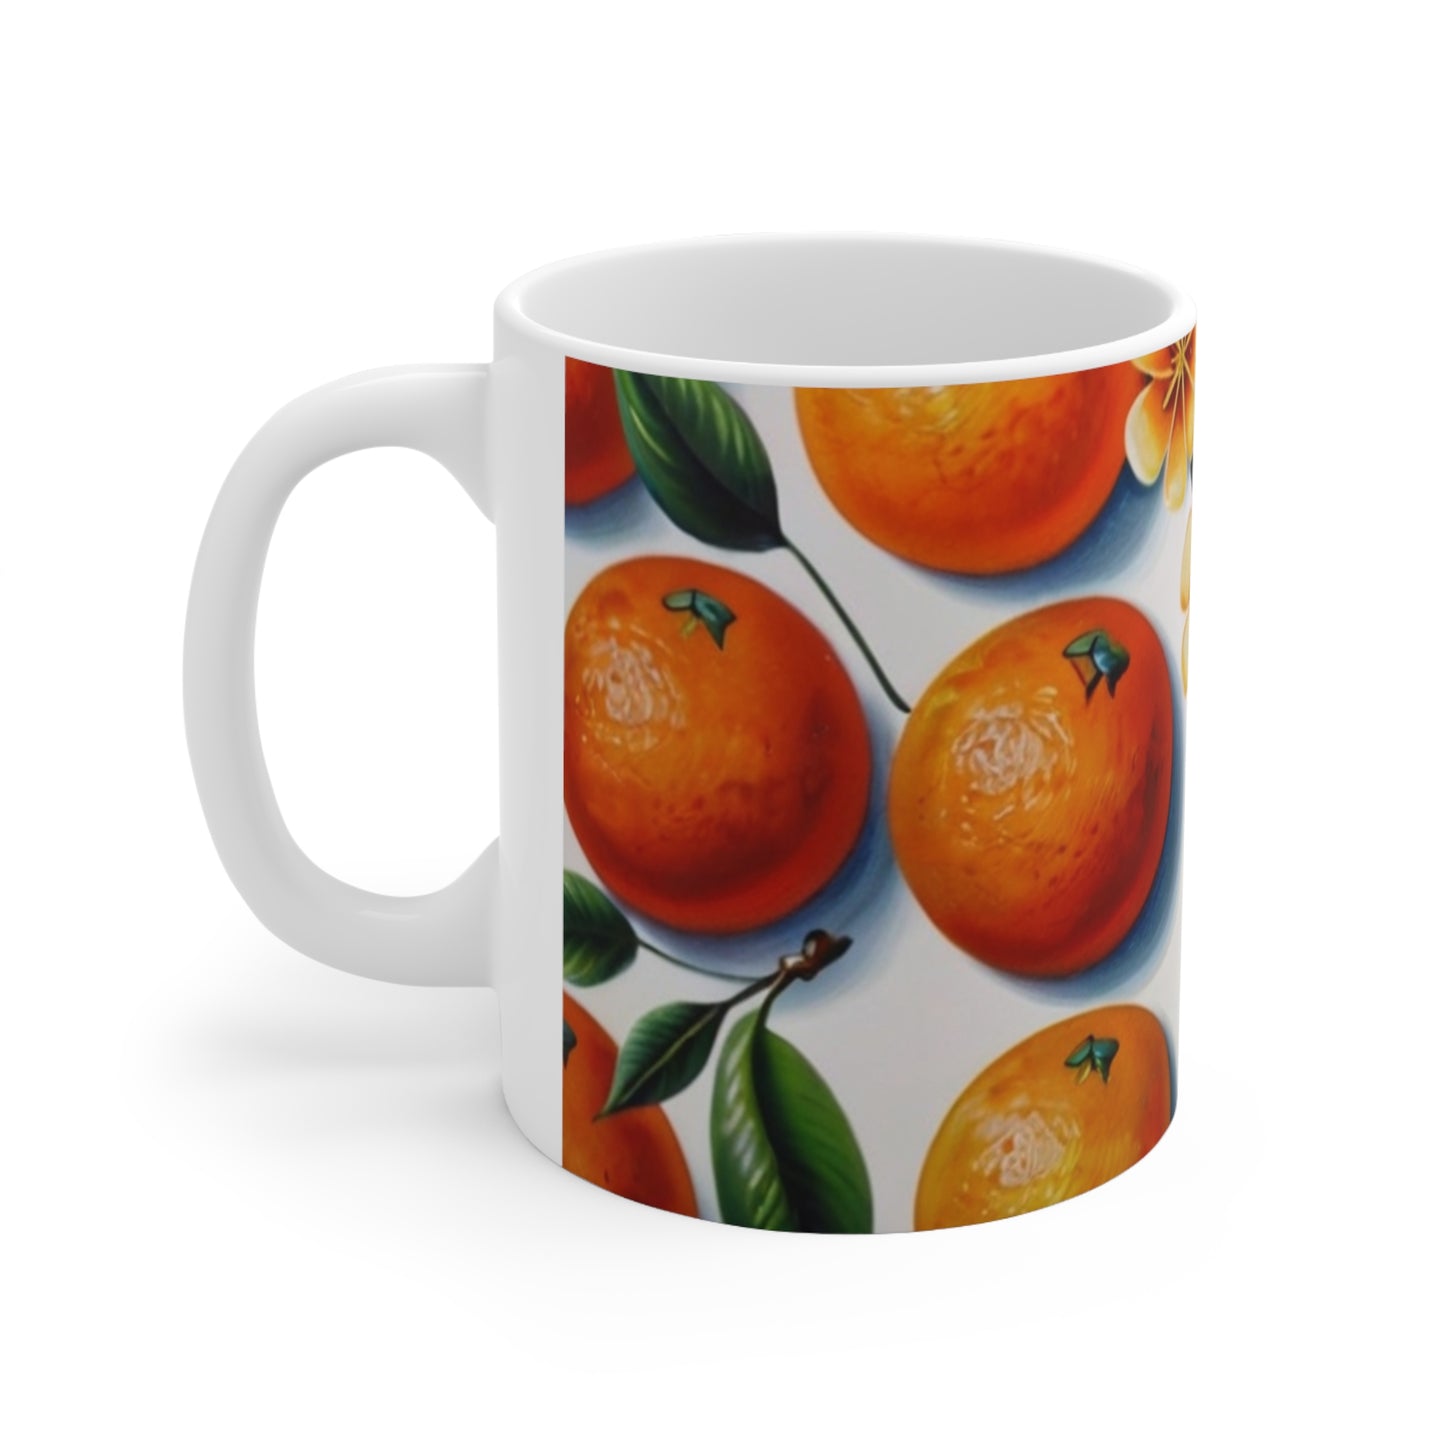 Oranges Fruit Mug - Ceramic Coffee Mug 11oz